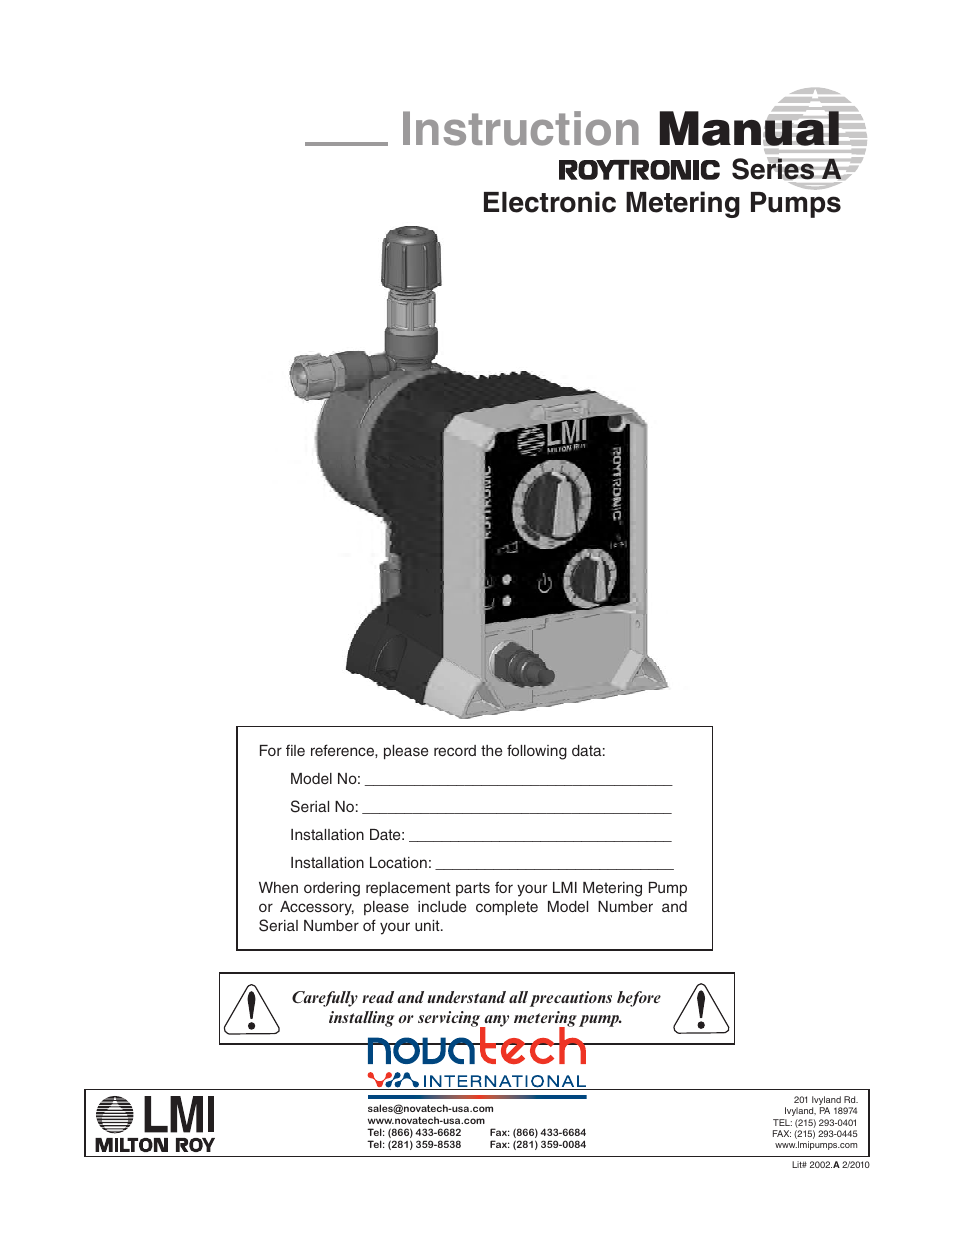 Nova-Tech LMI Roytronic Series A Metering Pump User Manual | 40 pages